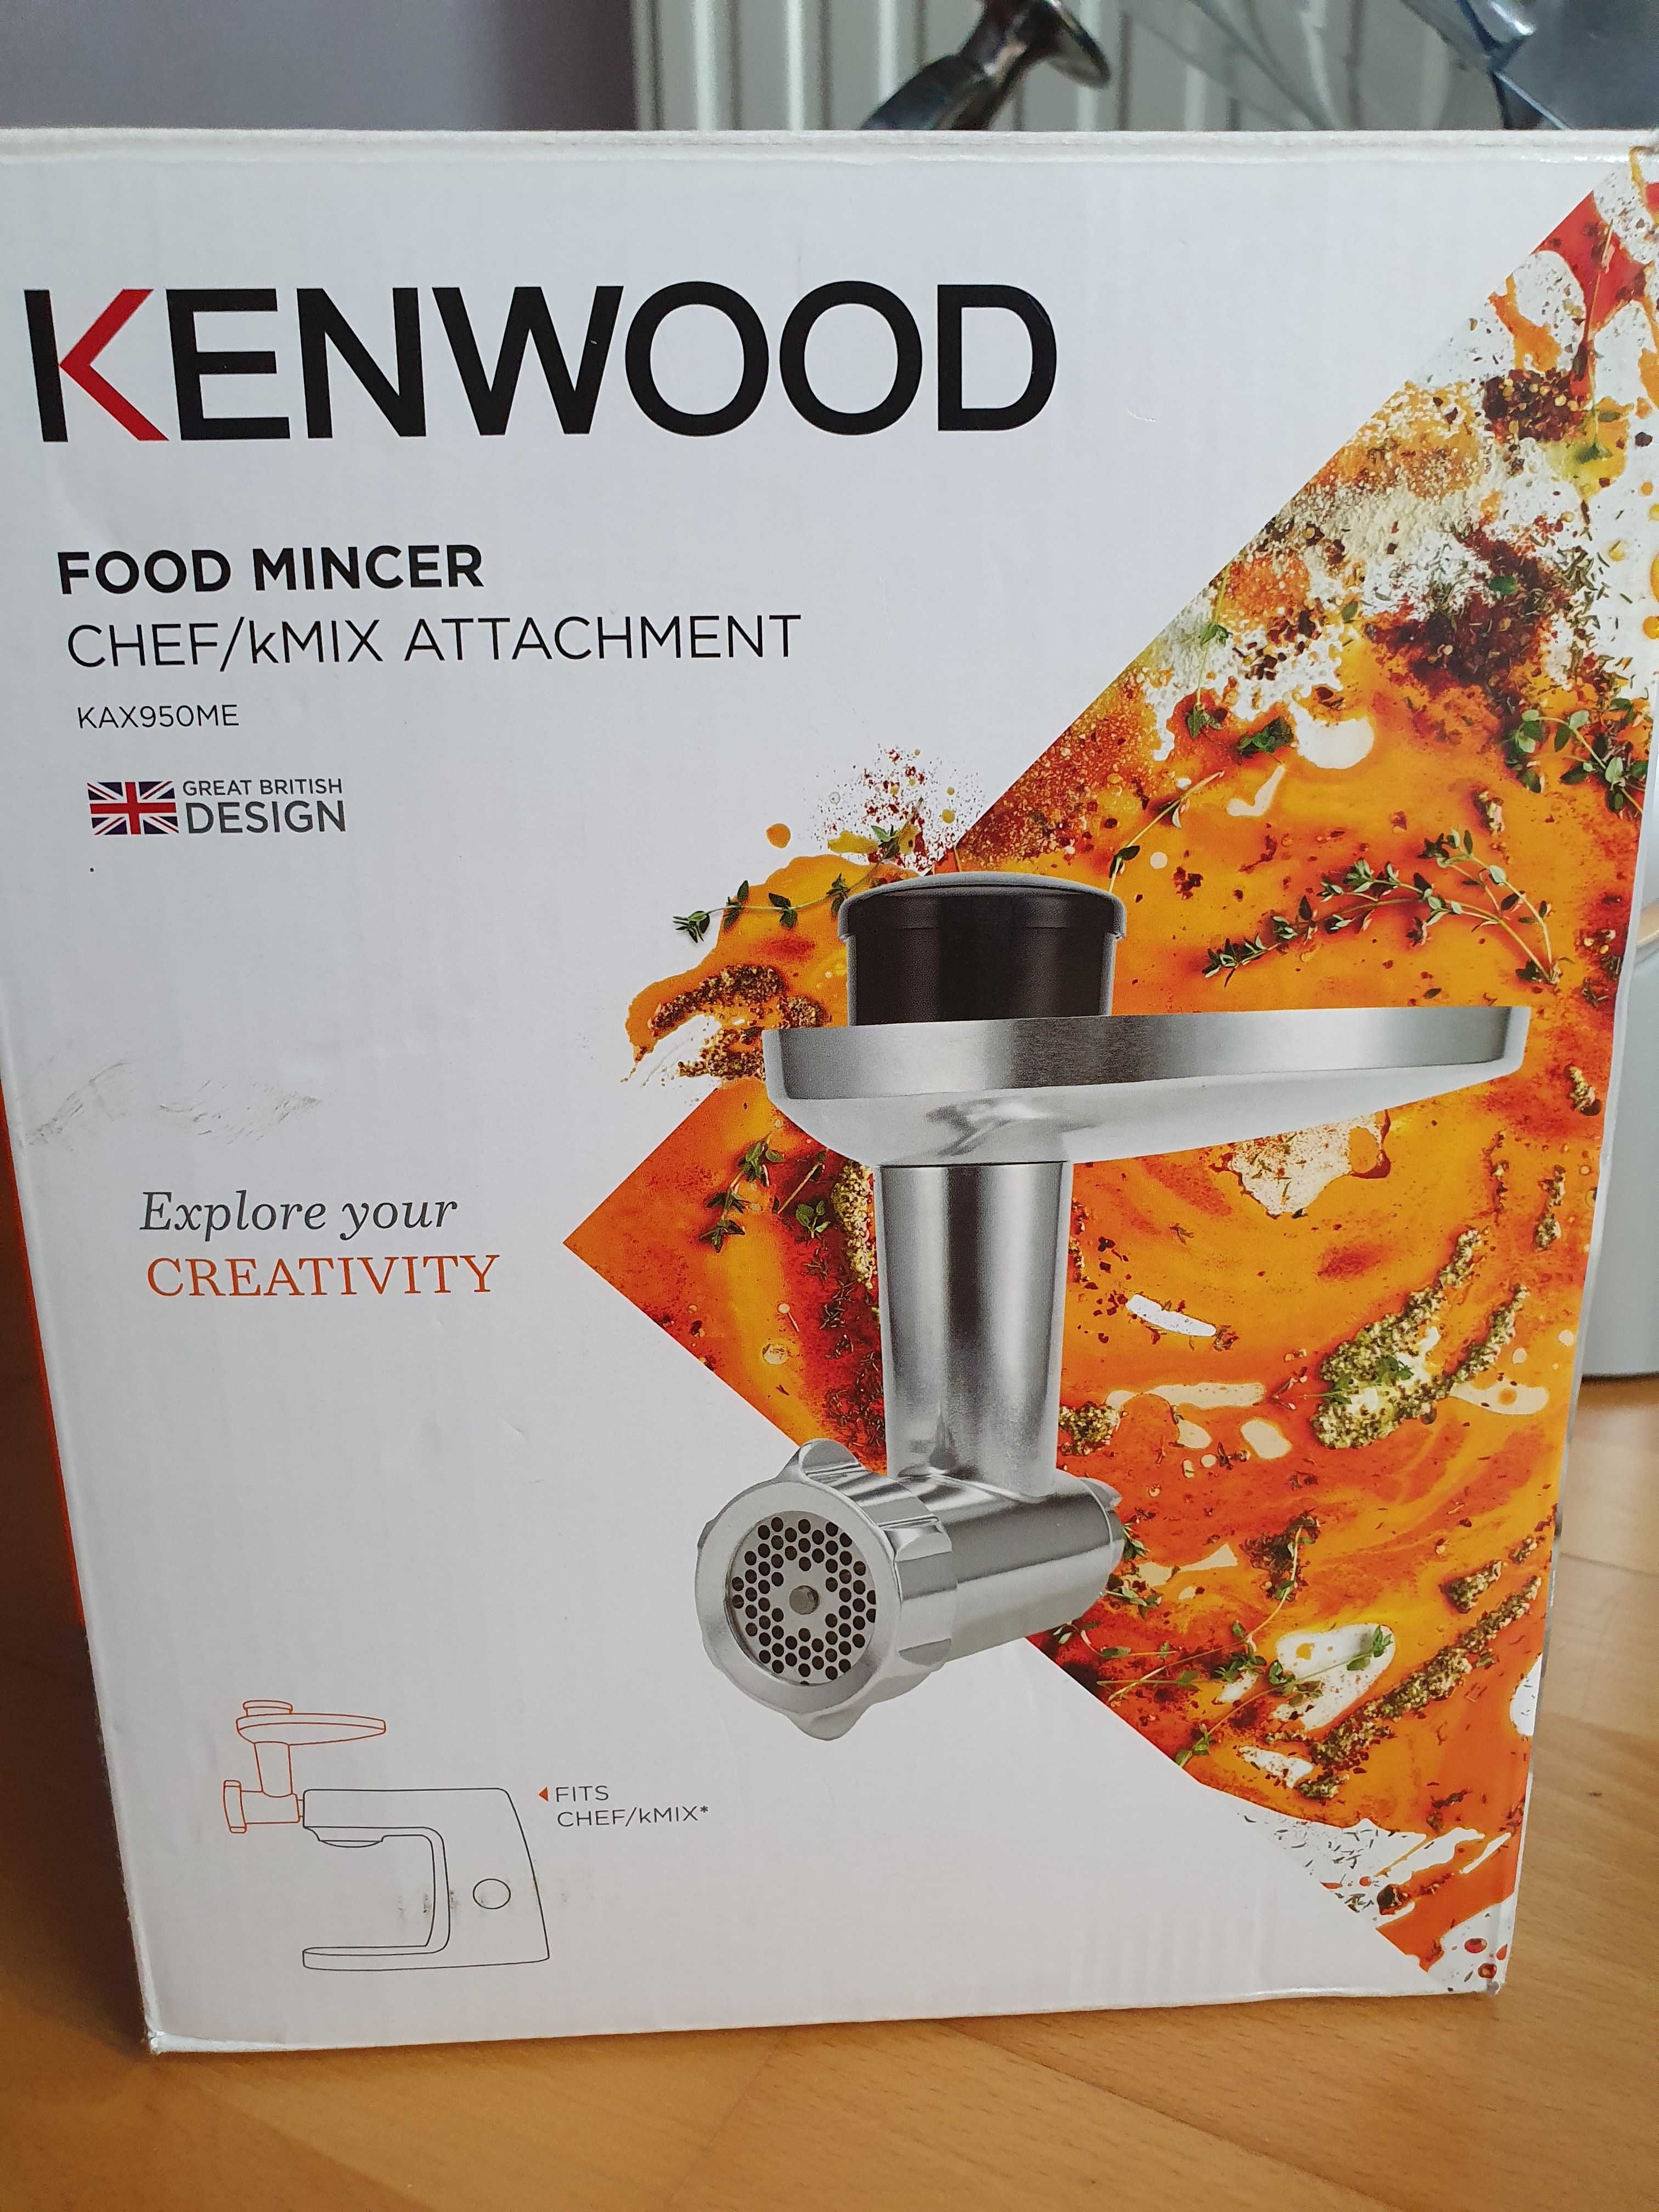 Kenwood maszynka do mielenia mięsa KAX950ME